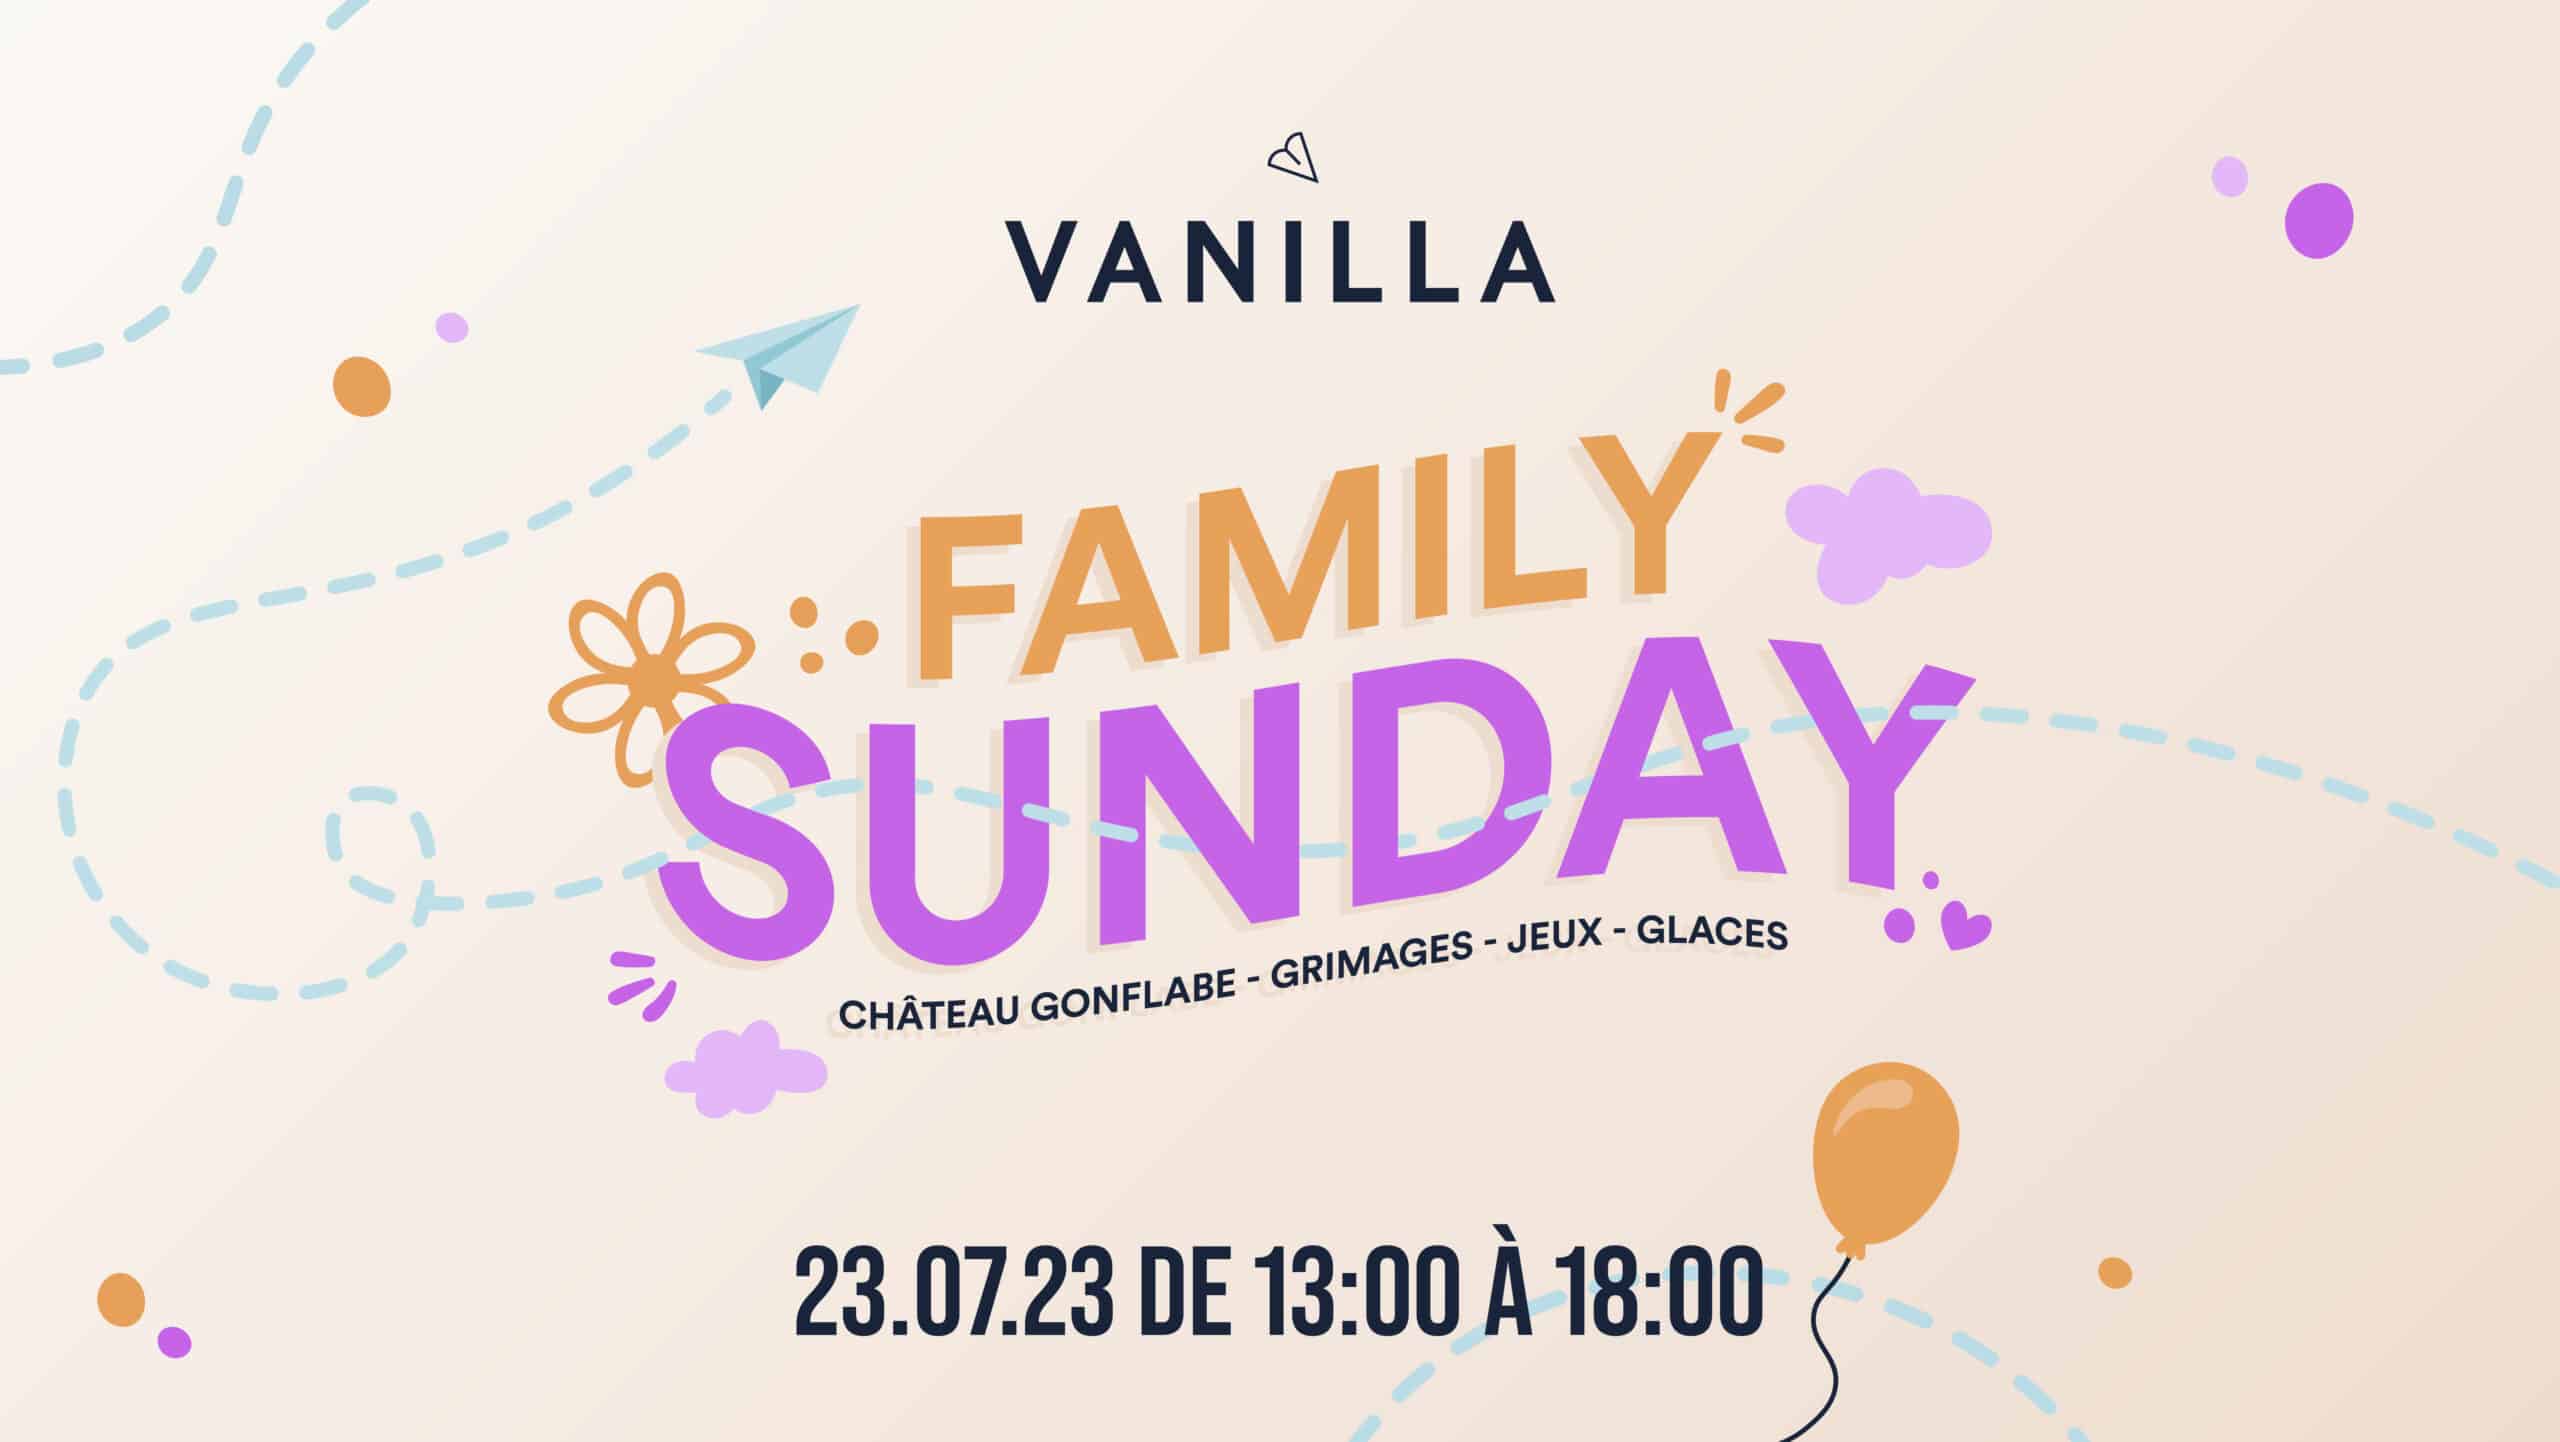 vanilla-events-sunday-ML_Vanilla-event-sunday-07-23